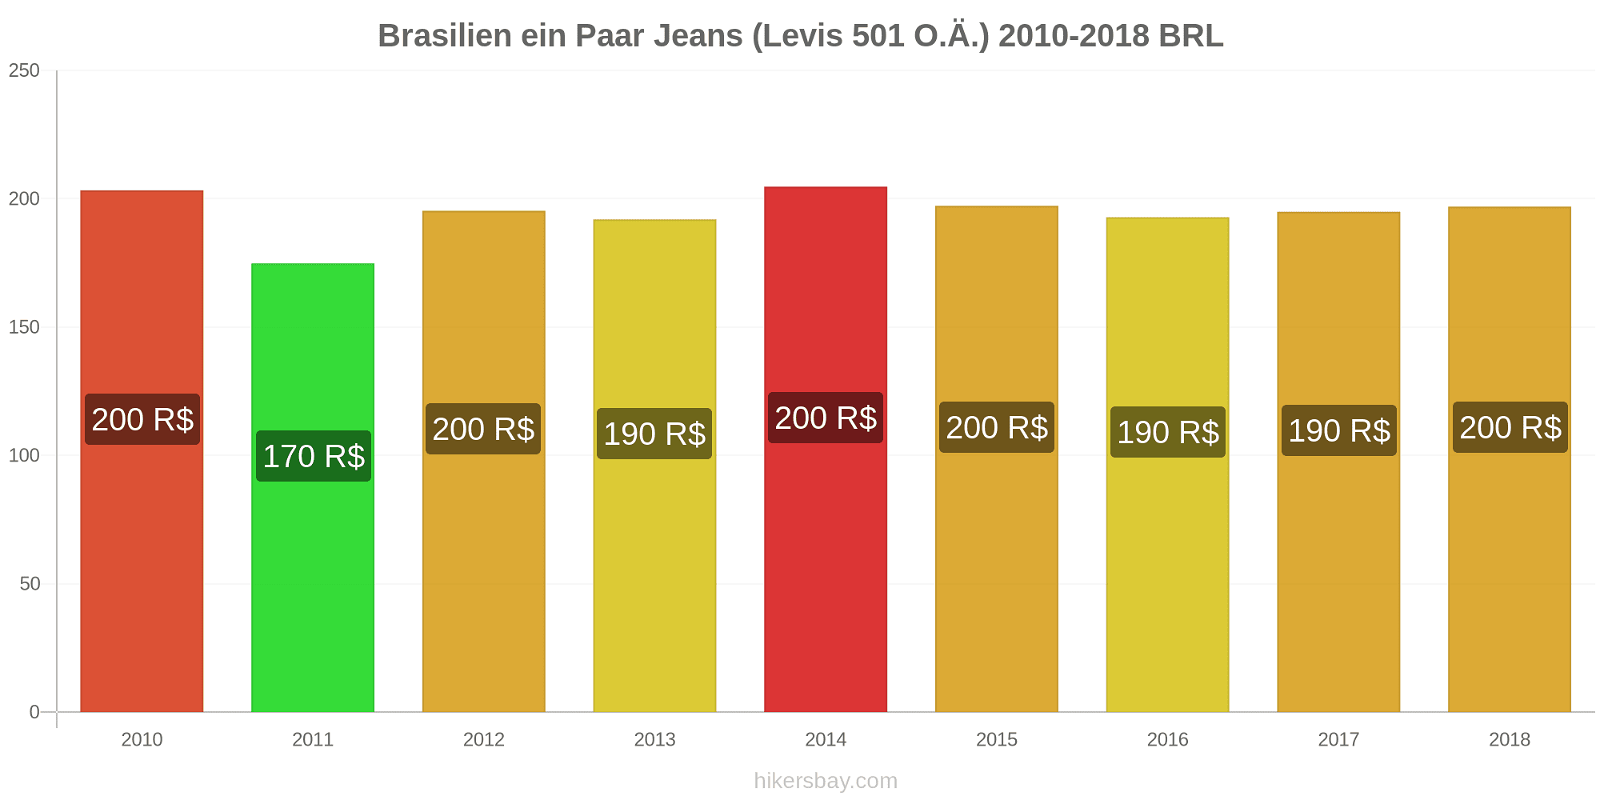 Brasilien Preisänderungen 1 Paar Jeans (Levis 501 oder ähnlich) hikersbay.com